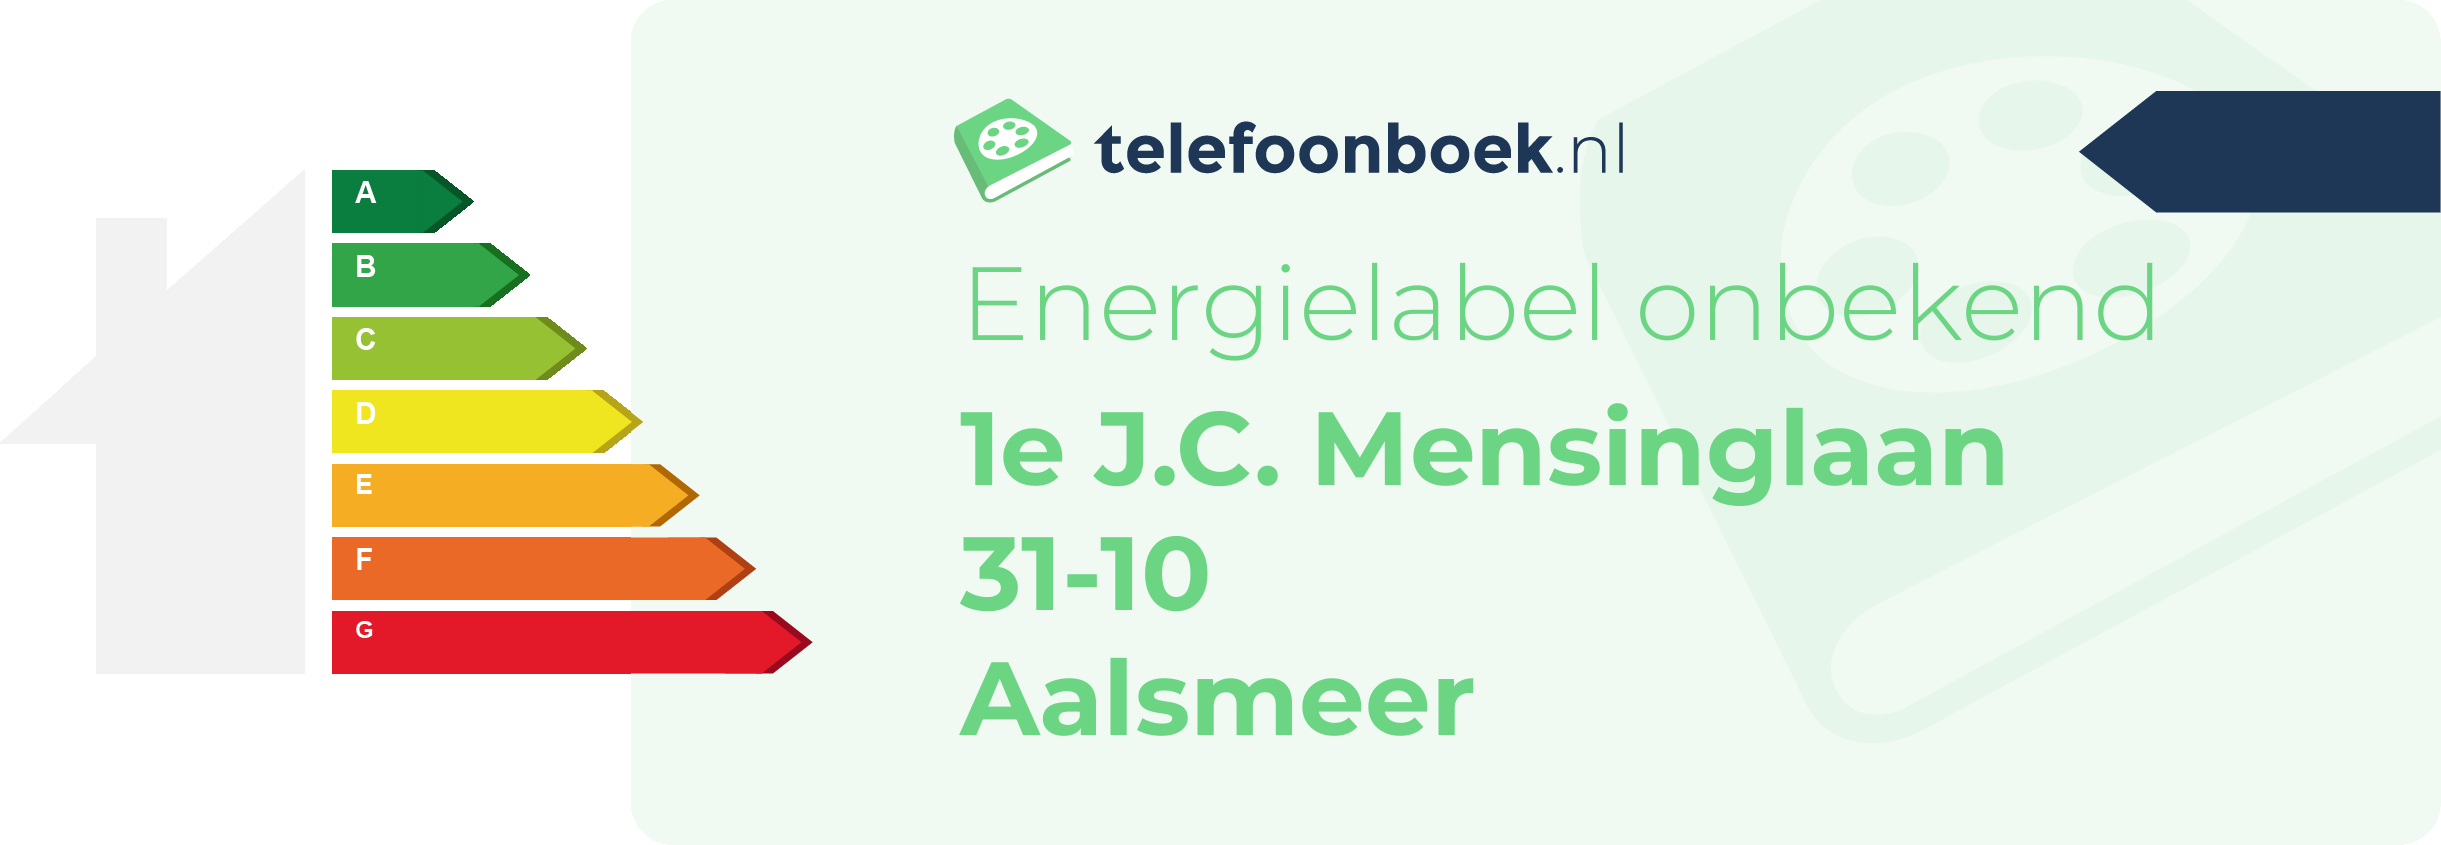 Energielabel 1e J.C. Mensinglaan 31-10 Aalsmeer